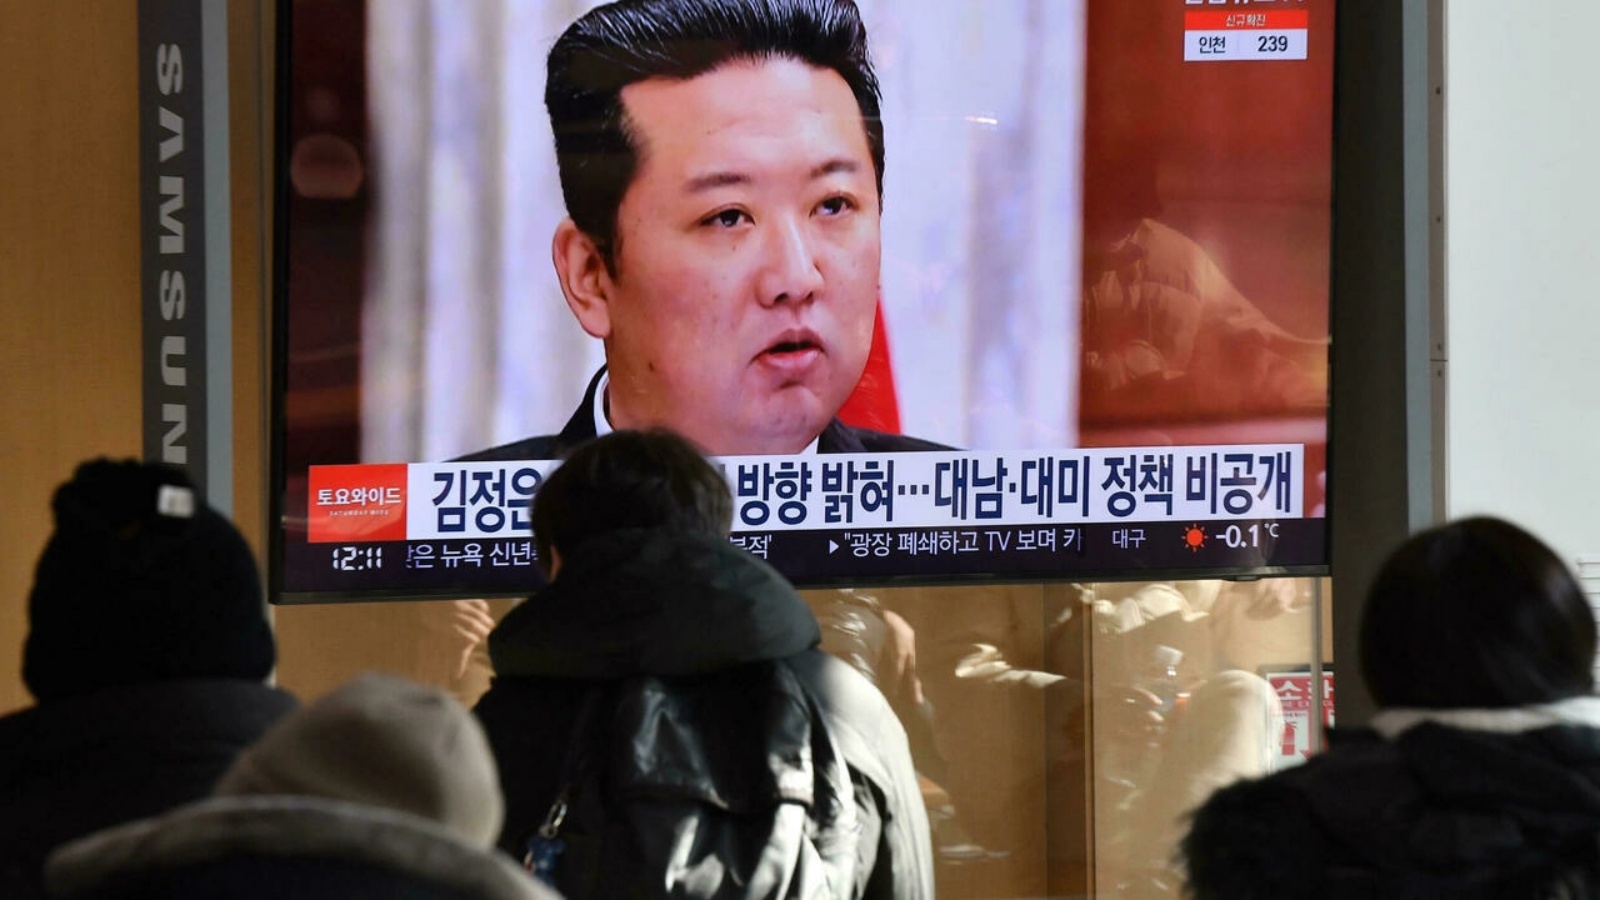 بث تلفزيوني يظهر صورة للزعيم الكوري الشمالي كيم جونغ أون خلال حضوره اجتماع اللجنة المركزي لحزب العمال، في محطة قطارات في سيول في الأول من كانون الثاني/يناير 2022